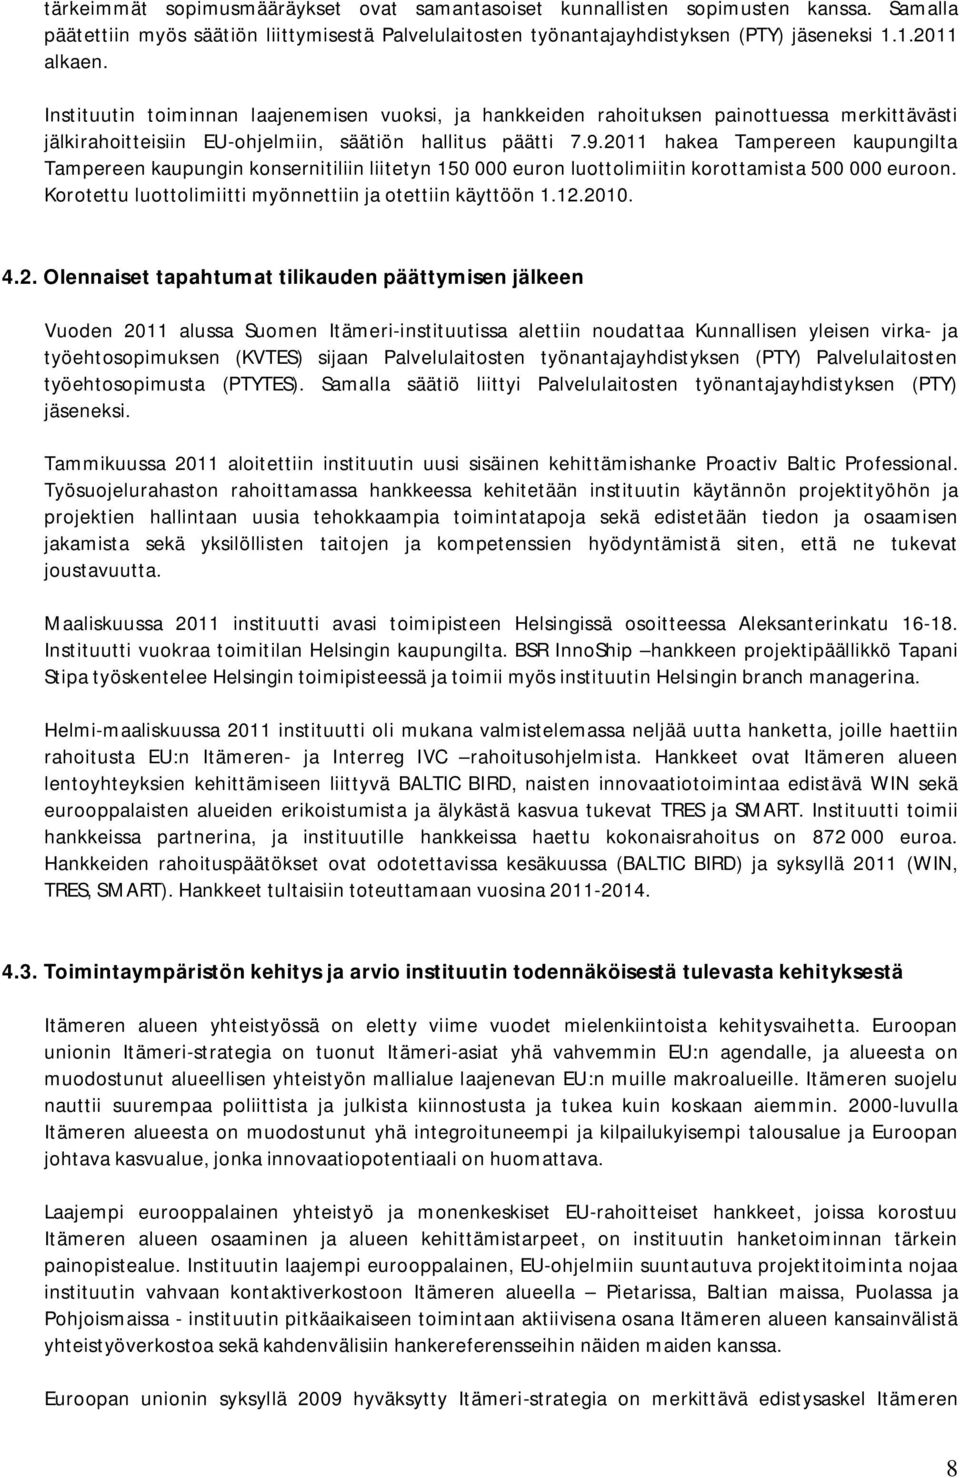 2011 hakea Tampereen kaupungilta Tampereen kaupungin konsernitiliin liitetyn 150 000 euron luottolimiitin korottamista 500 000 euroon. Korotettu luottolimiitti myönnettiin ja otettiin käyttöön 1.12.